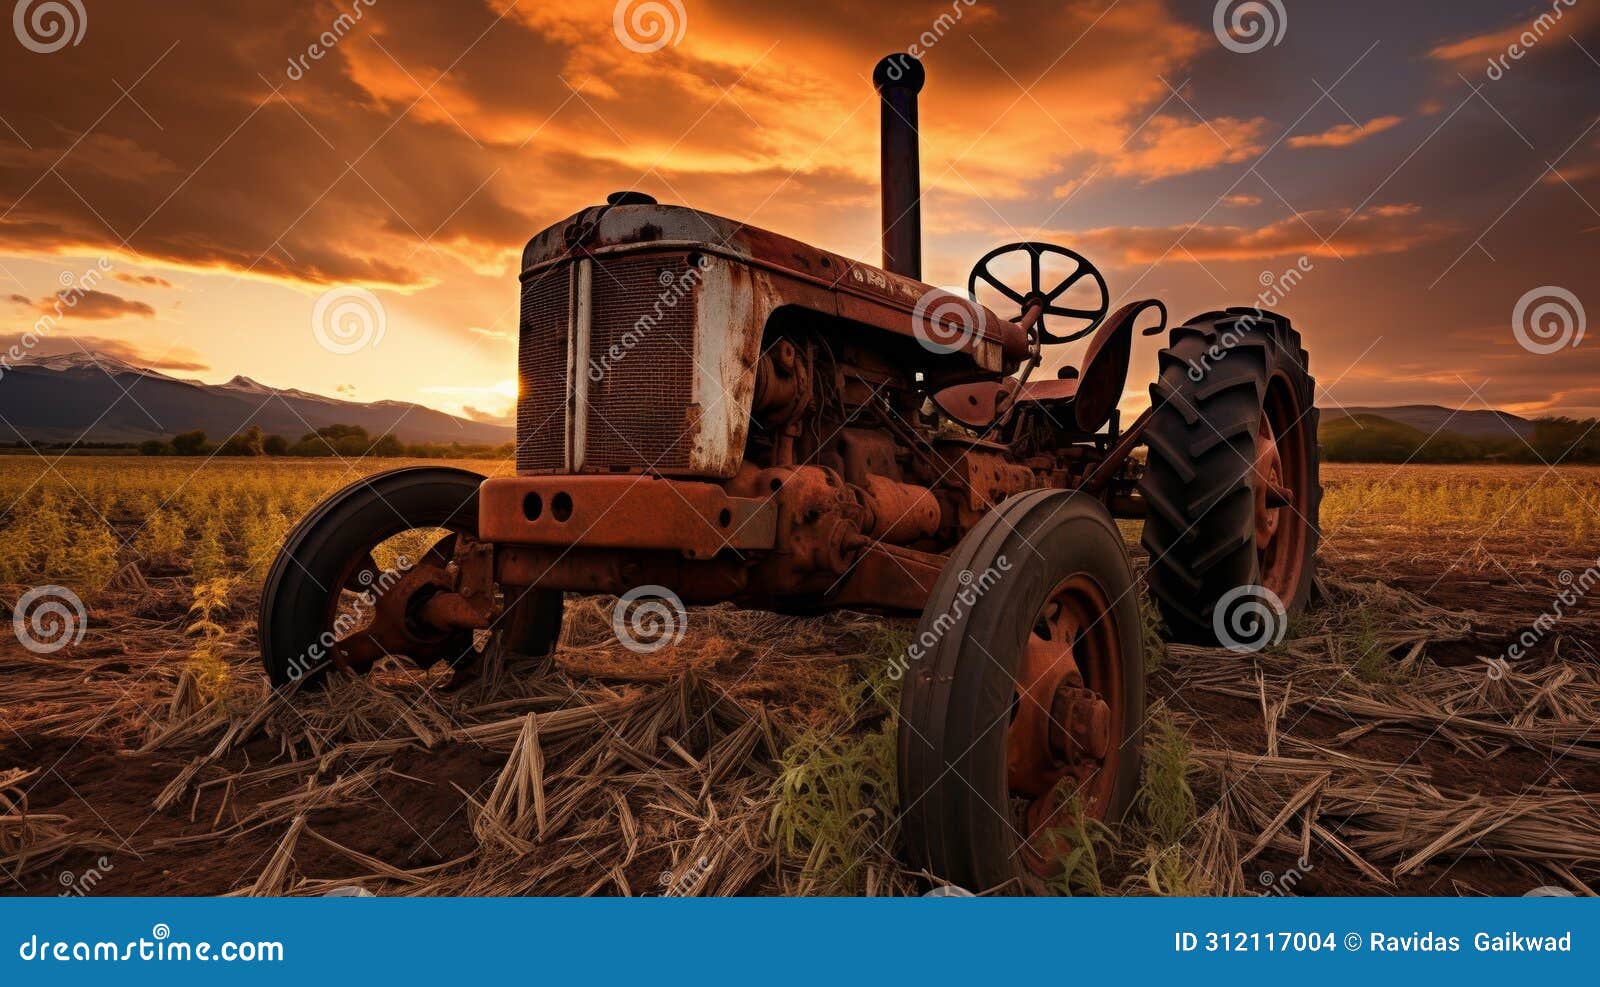 solo tractor forsaken in wild meadow nature reclaiming